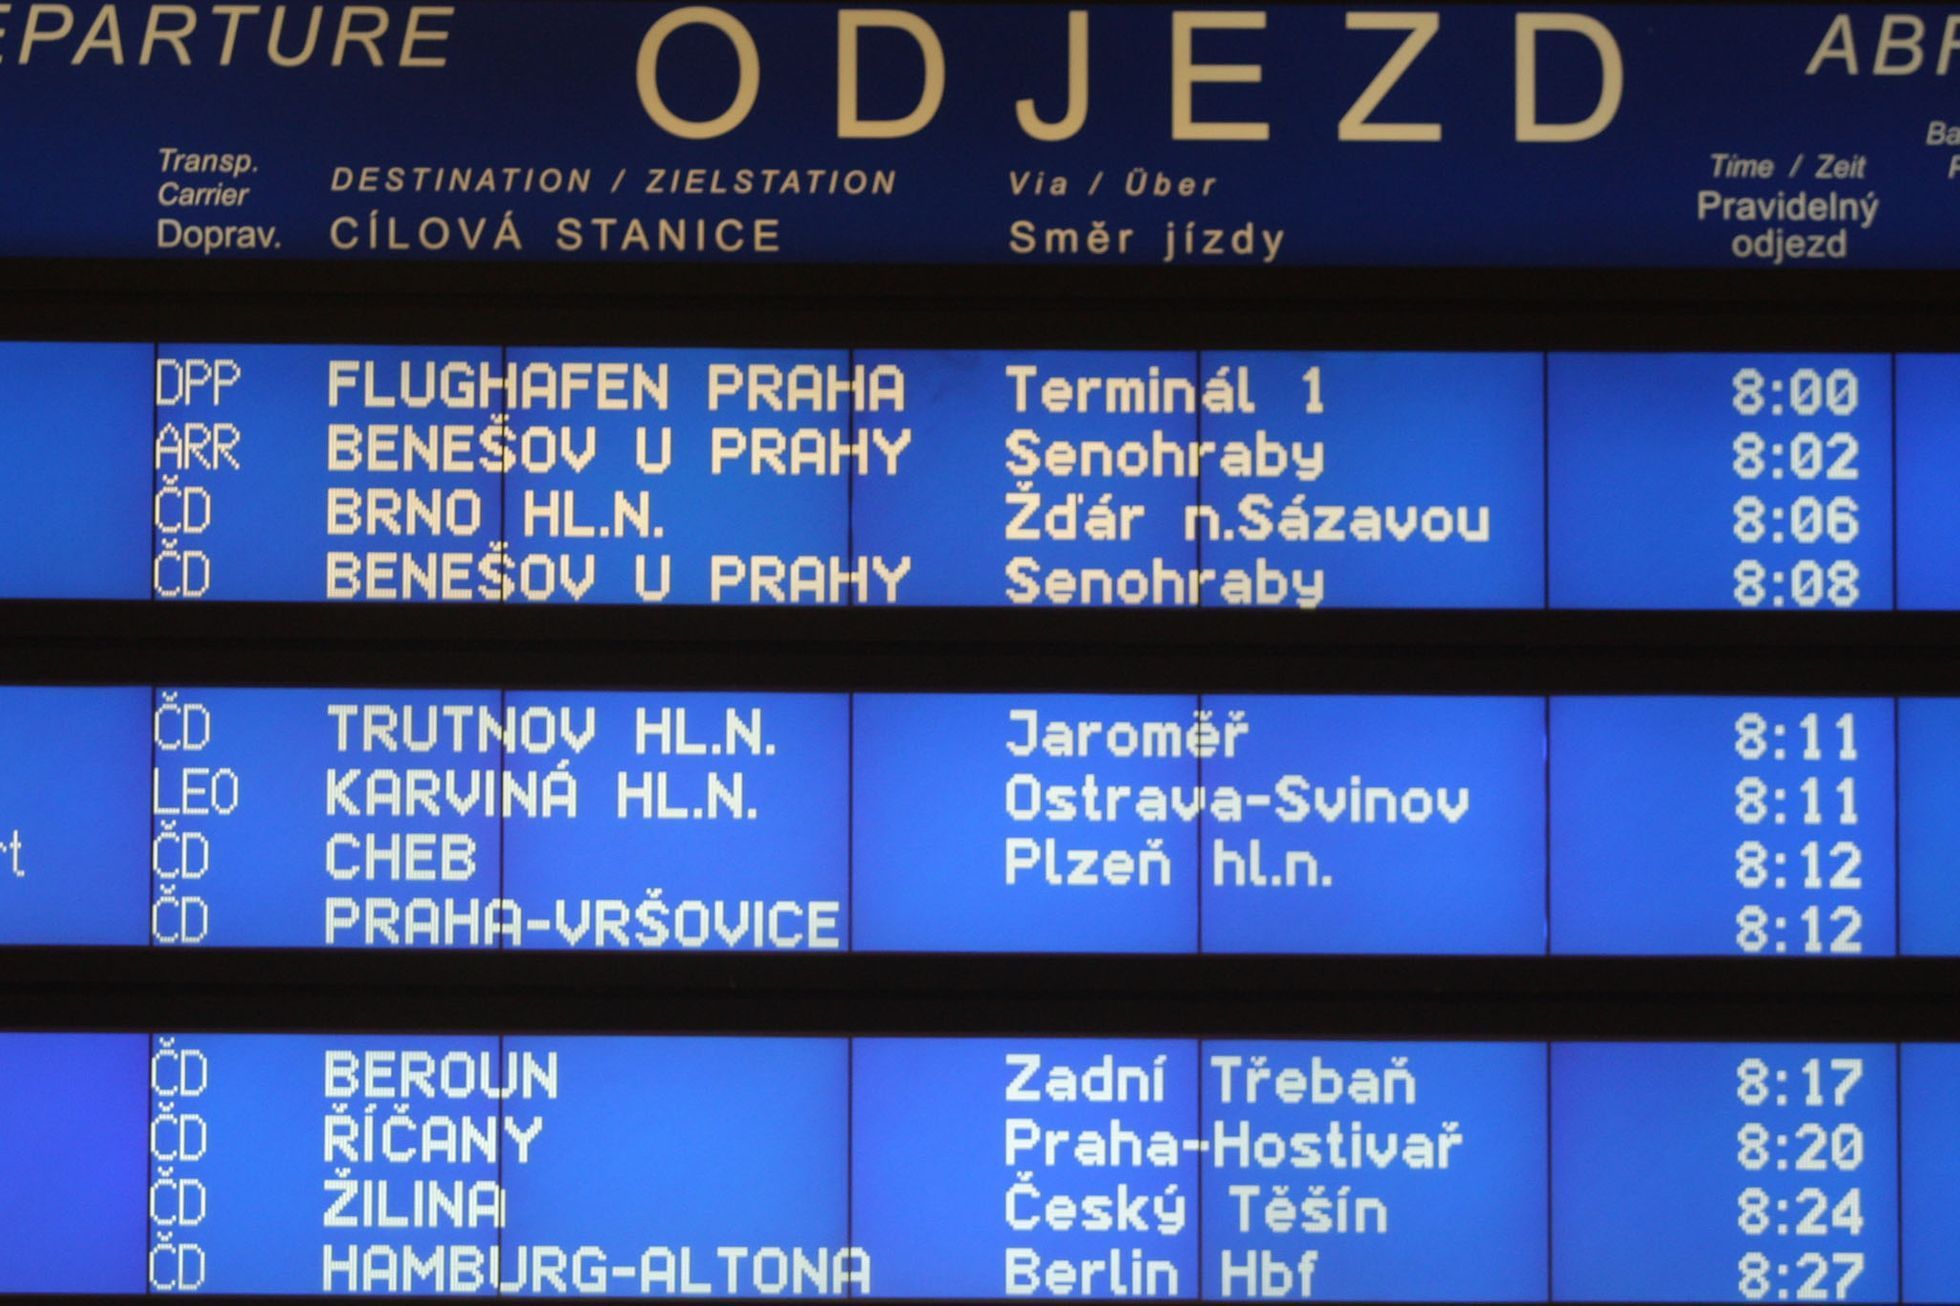 Arriva na trati Praha - Benešov